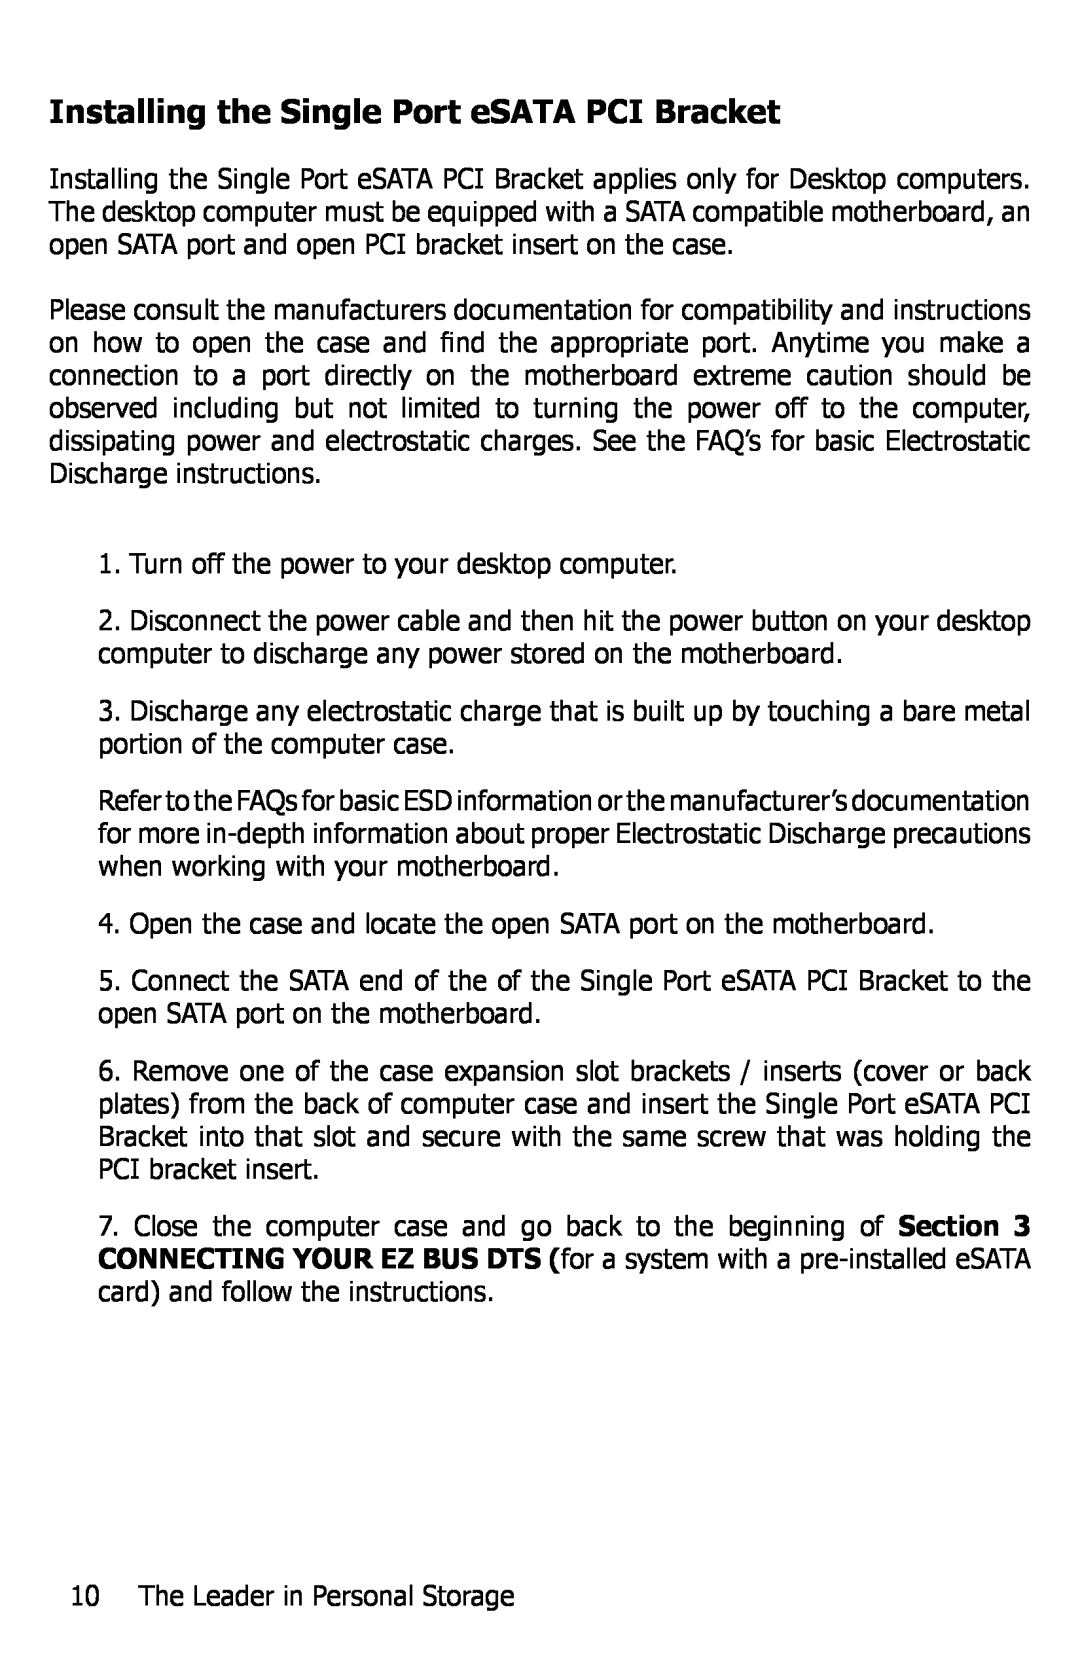 Apricorn EZ Bus DTS manual Installing the Single Port eSATA PCI Bracket 